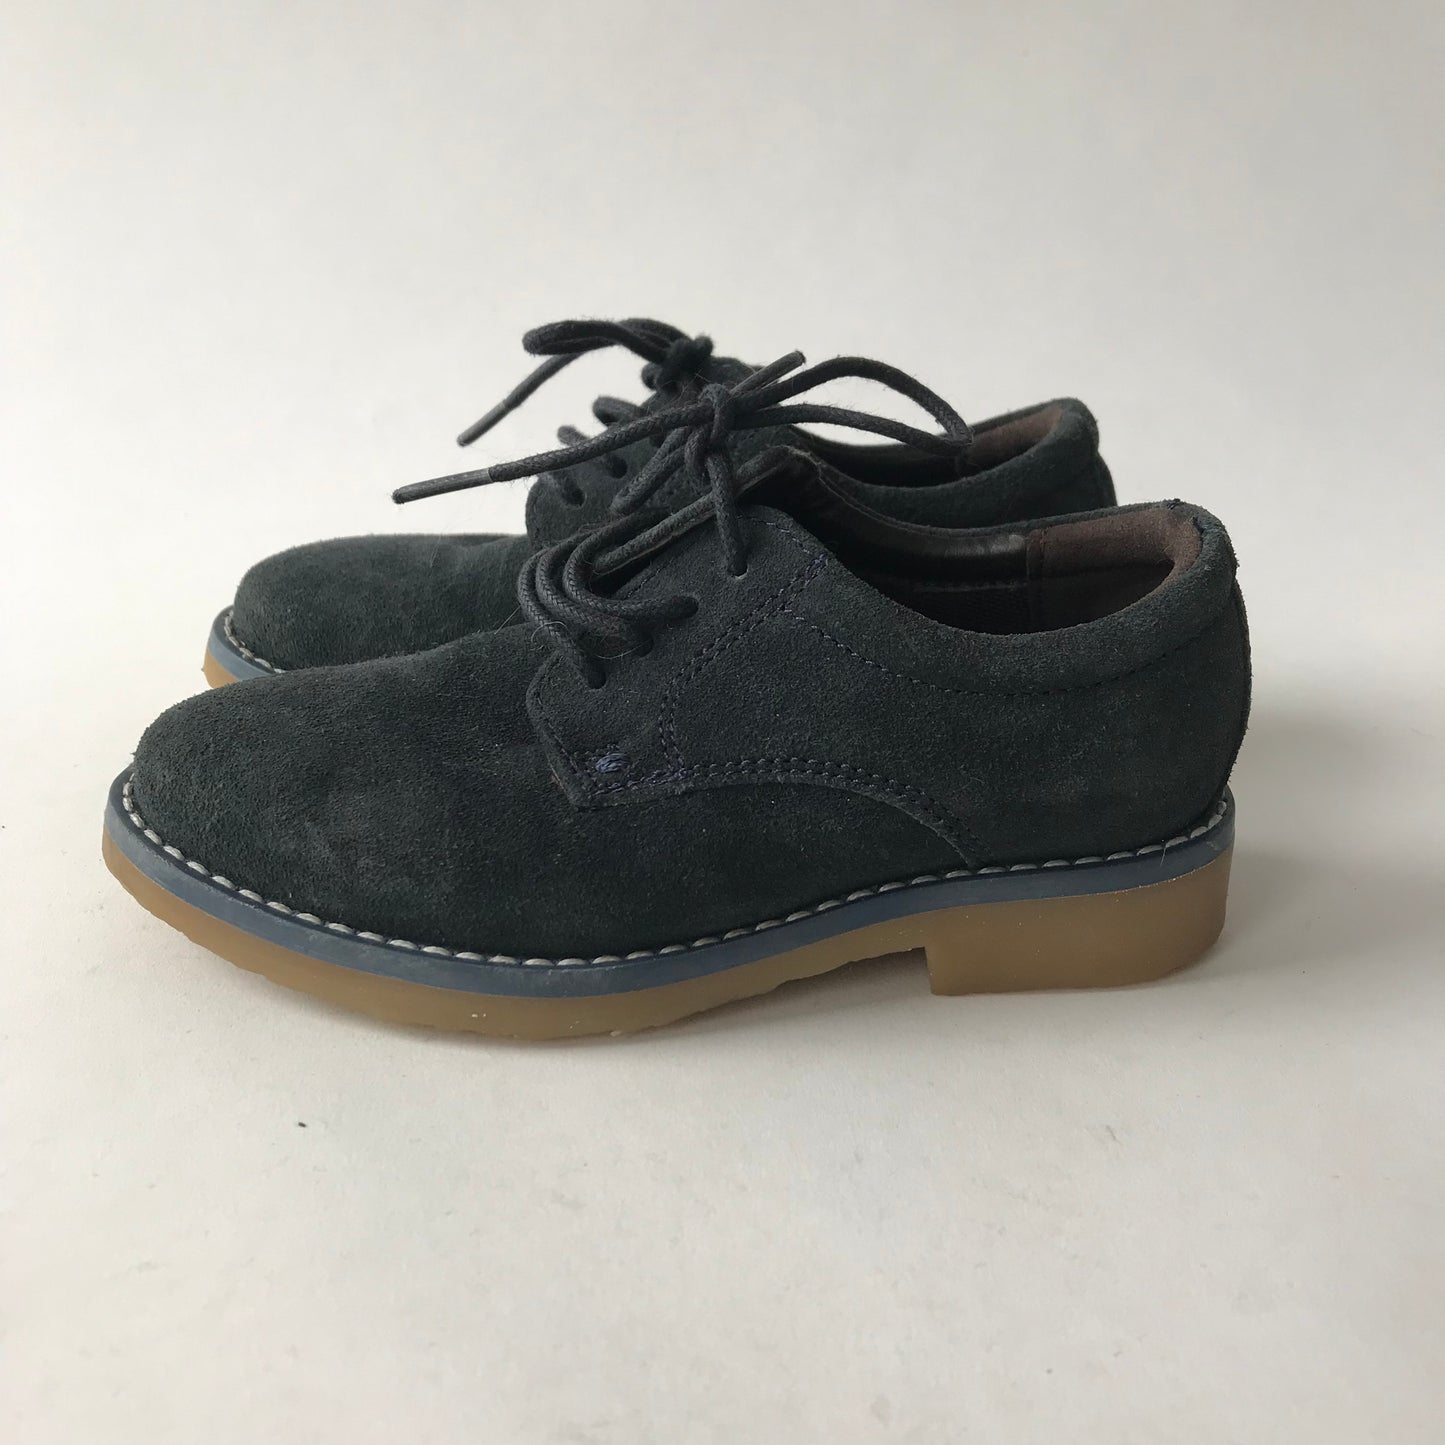 Navy Blue Leather Shoes Shoe Size 8 (jr)